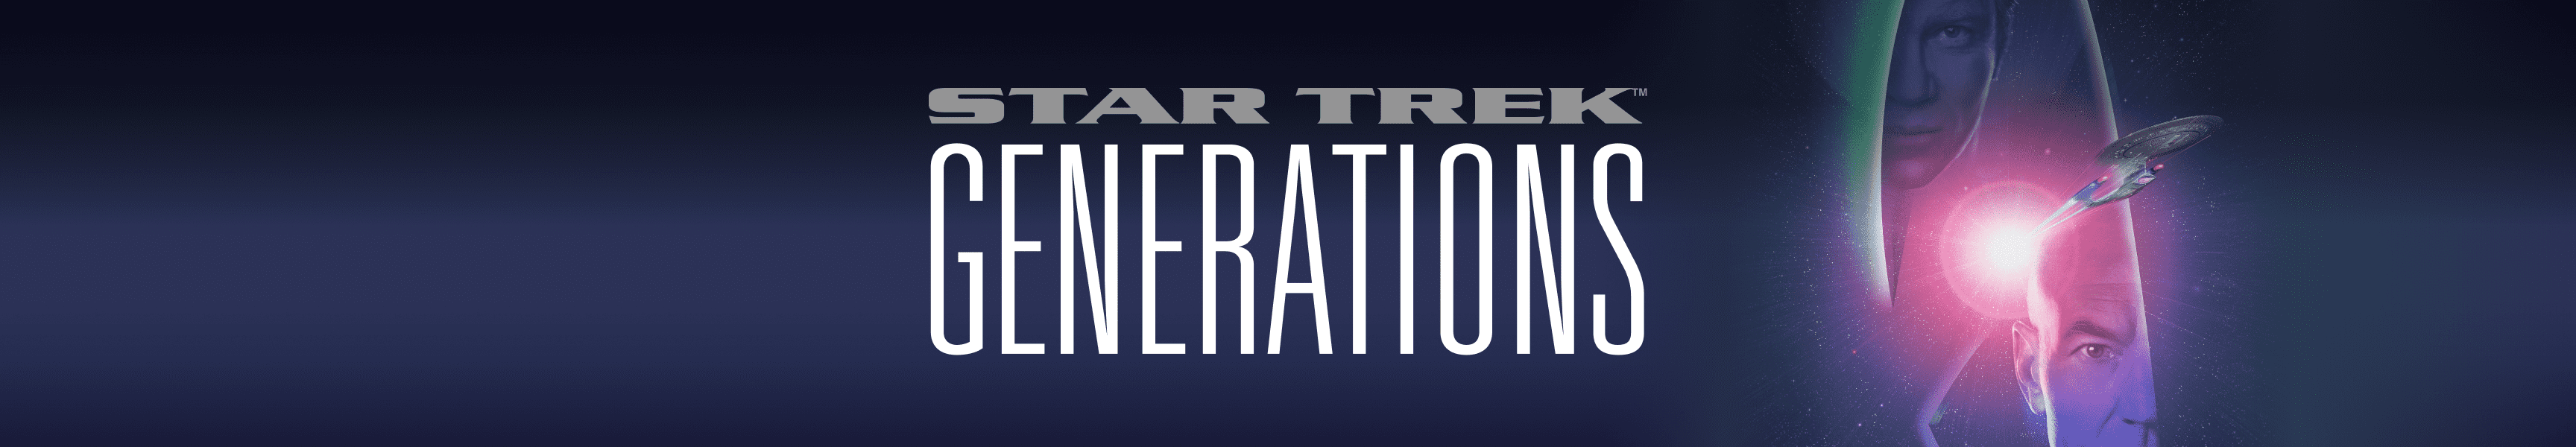 Star Trek Generations 25